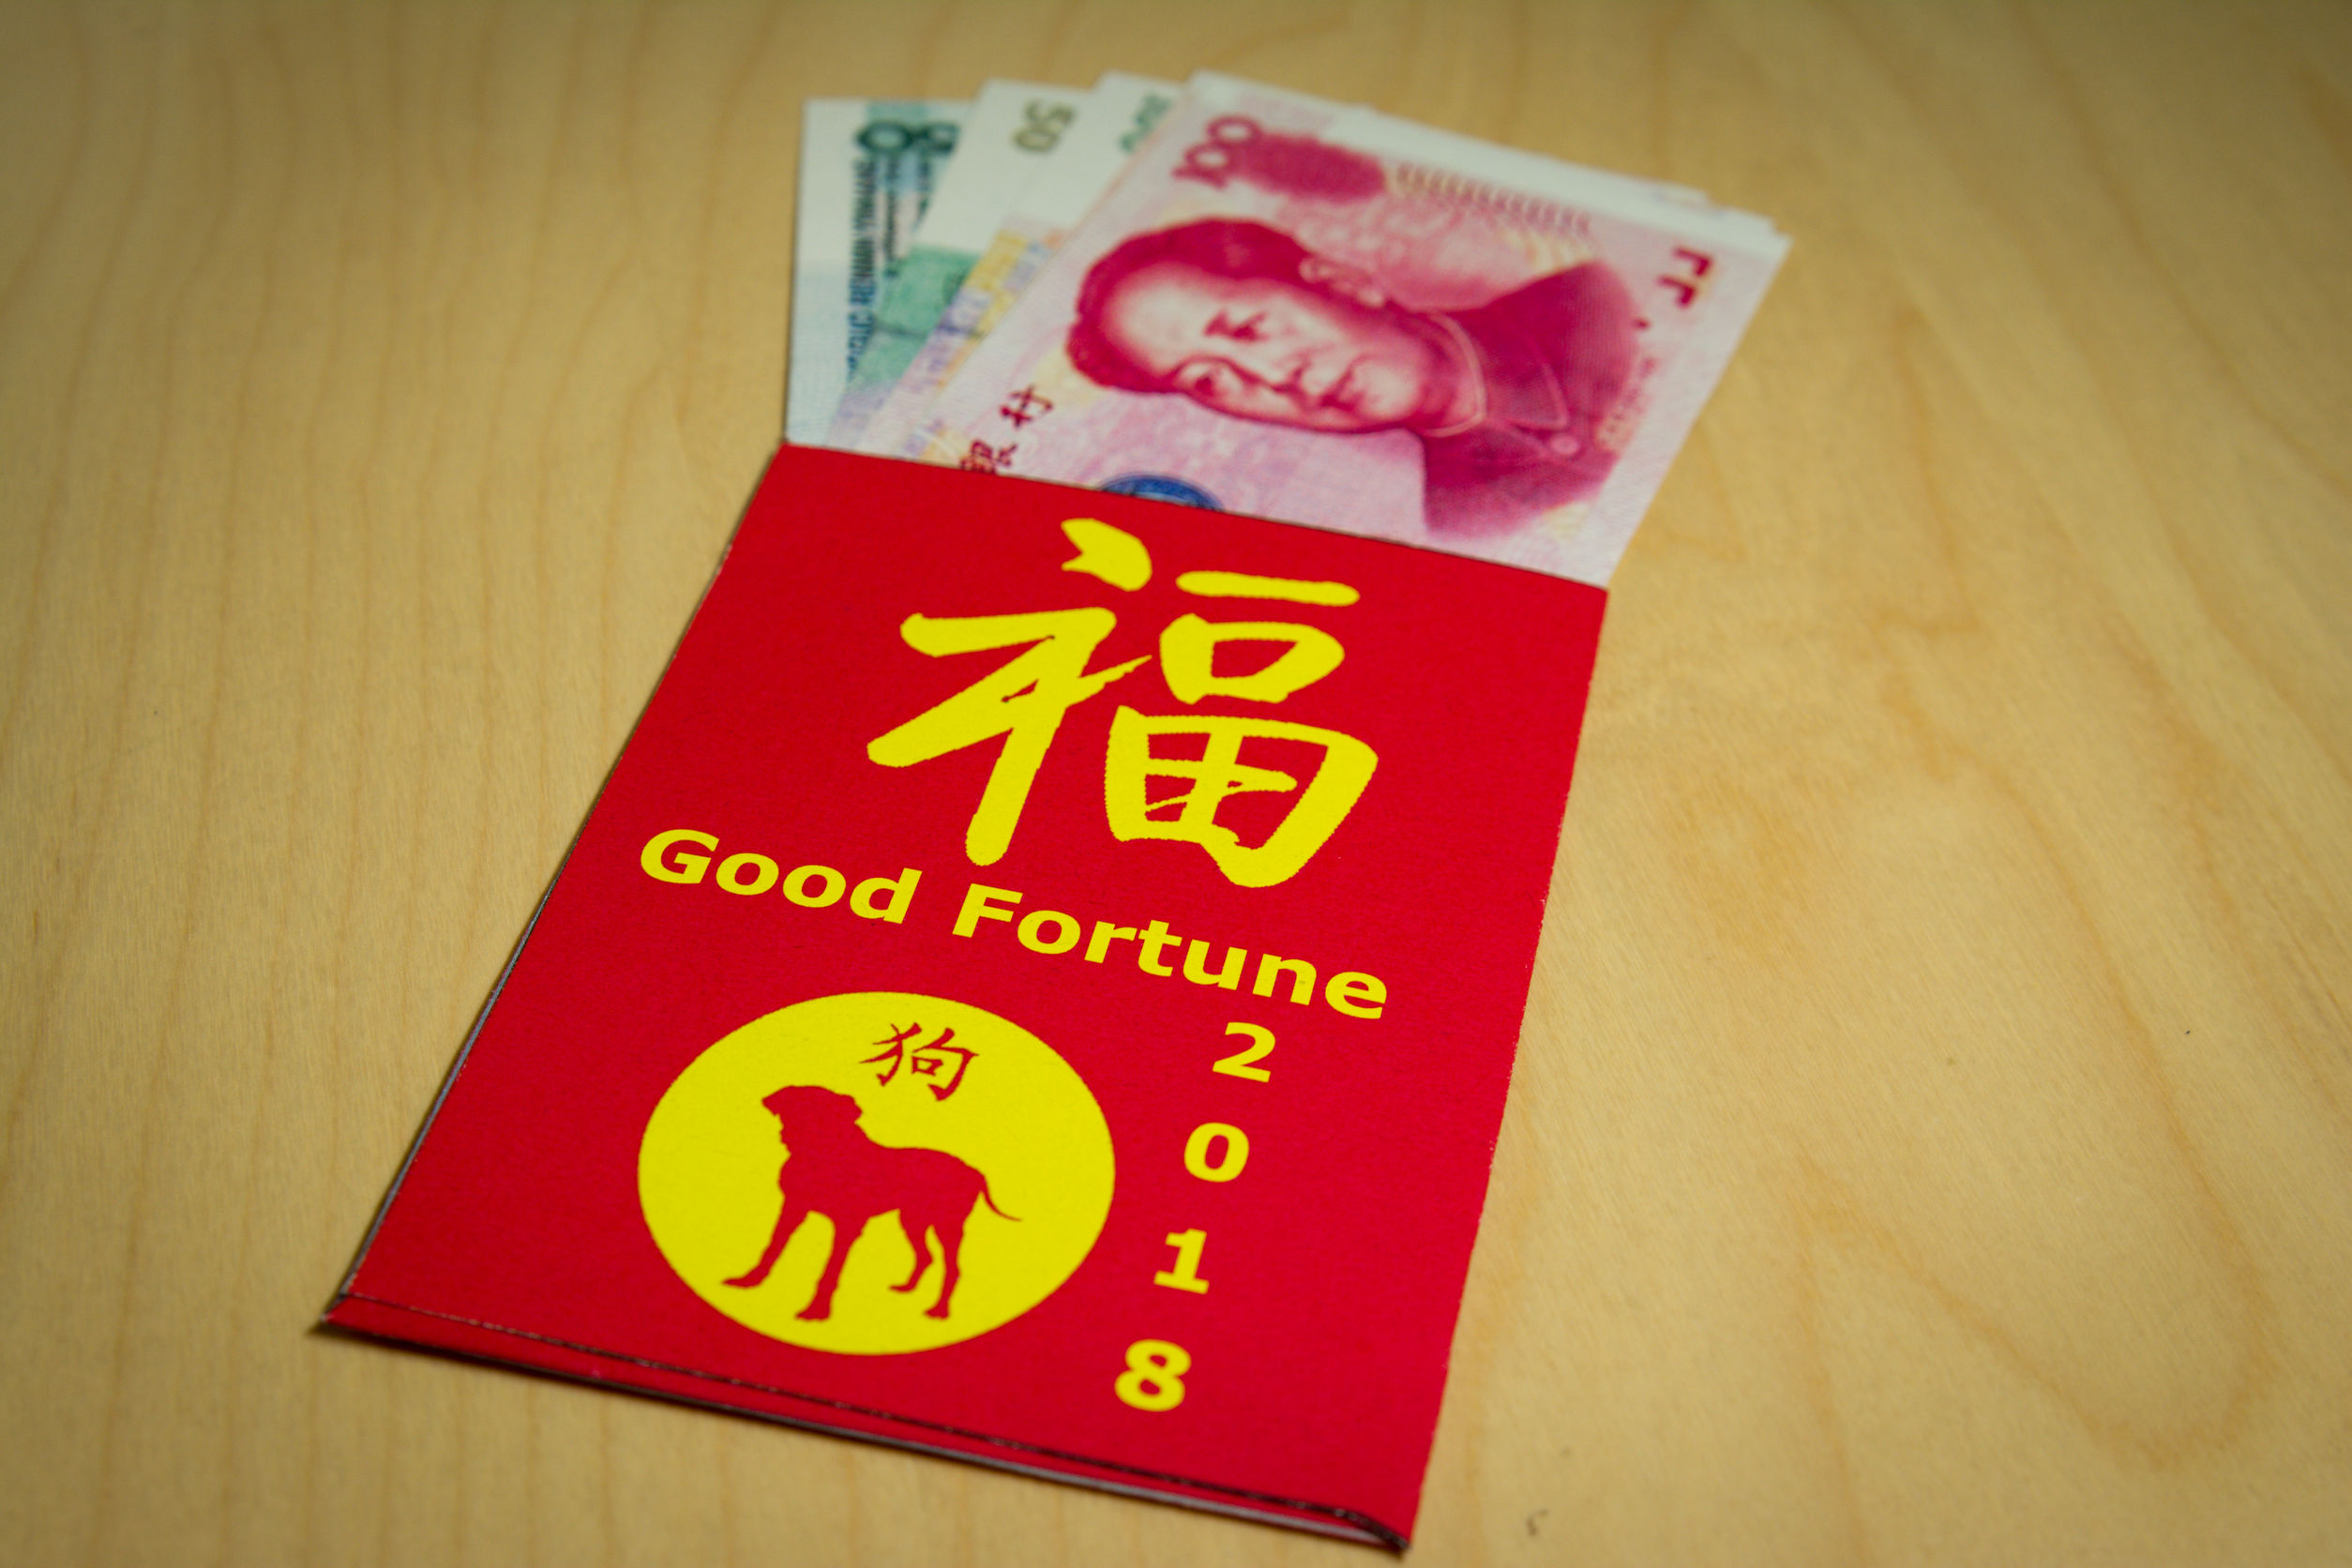 Bao am. Красный конверт в Китае. Красные конверты в Китае на новый год. Красный конвертик и деньги китайский новый год картинки. Bao Hi.